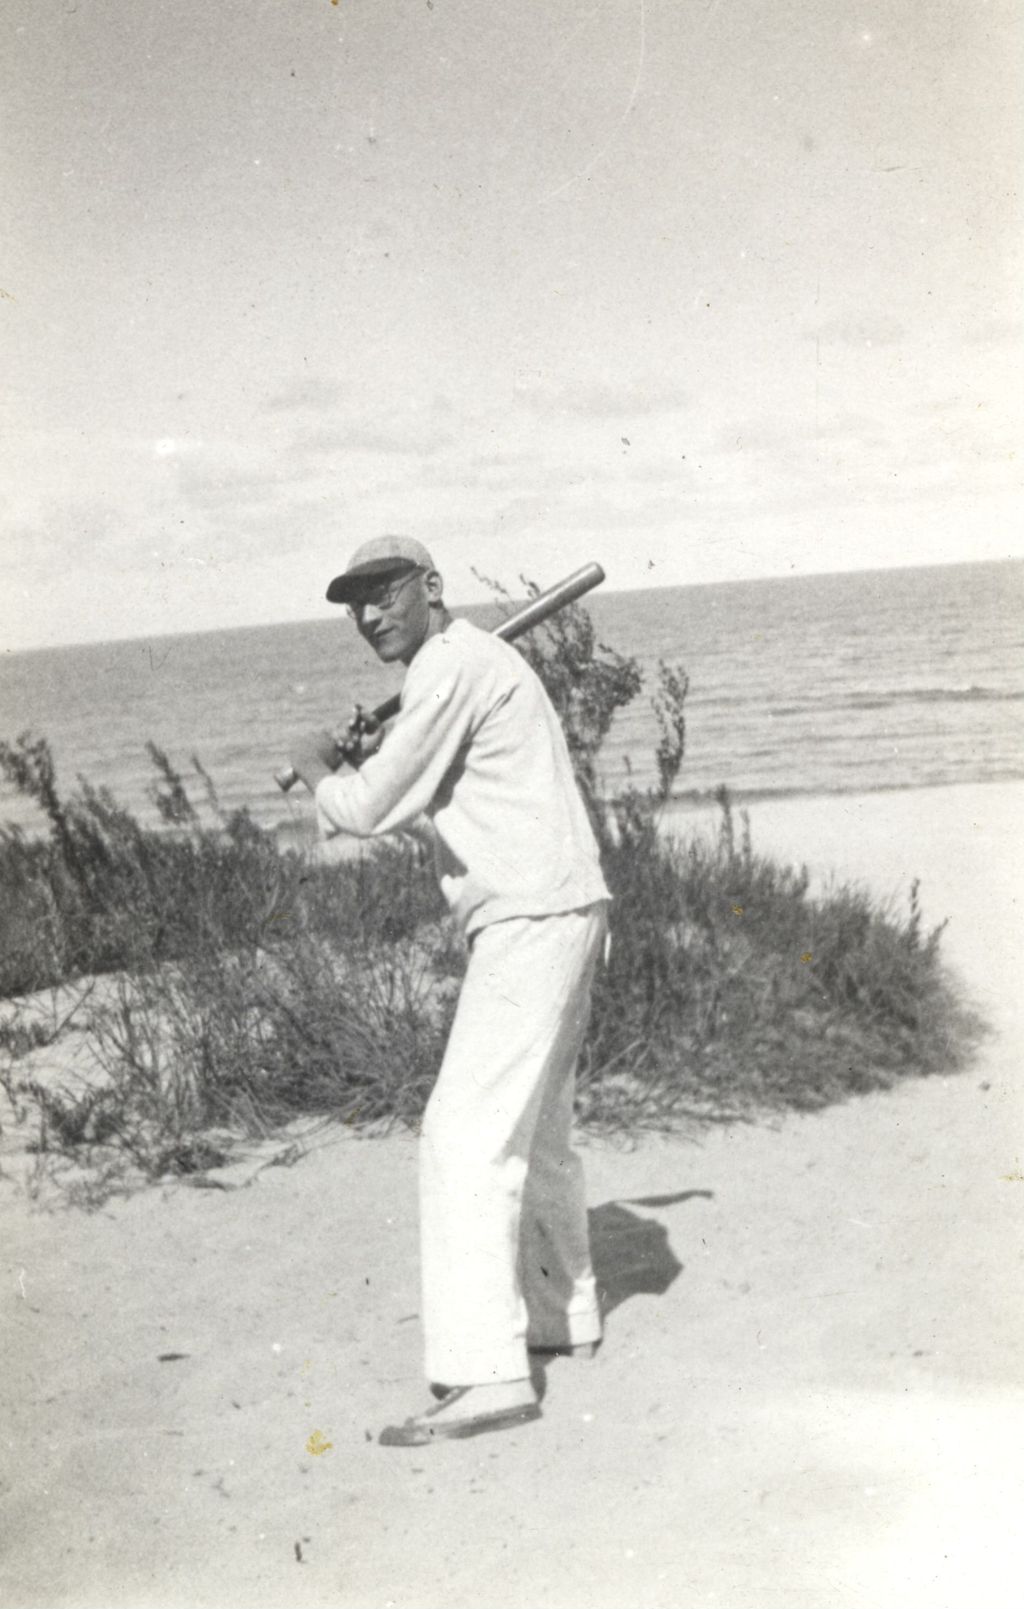 Man holding a baseball bat at the lakeshore